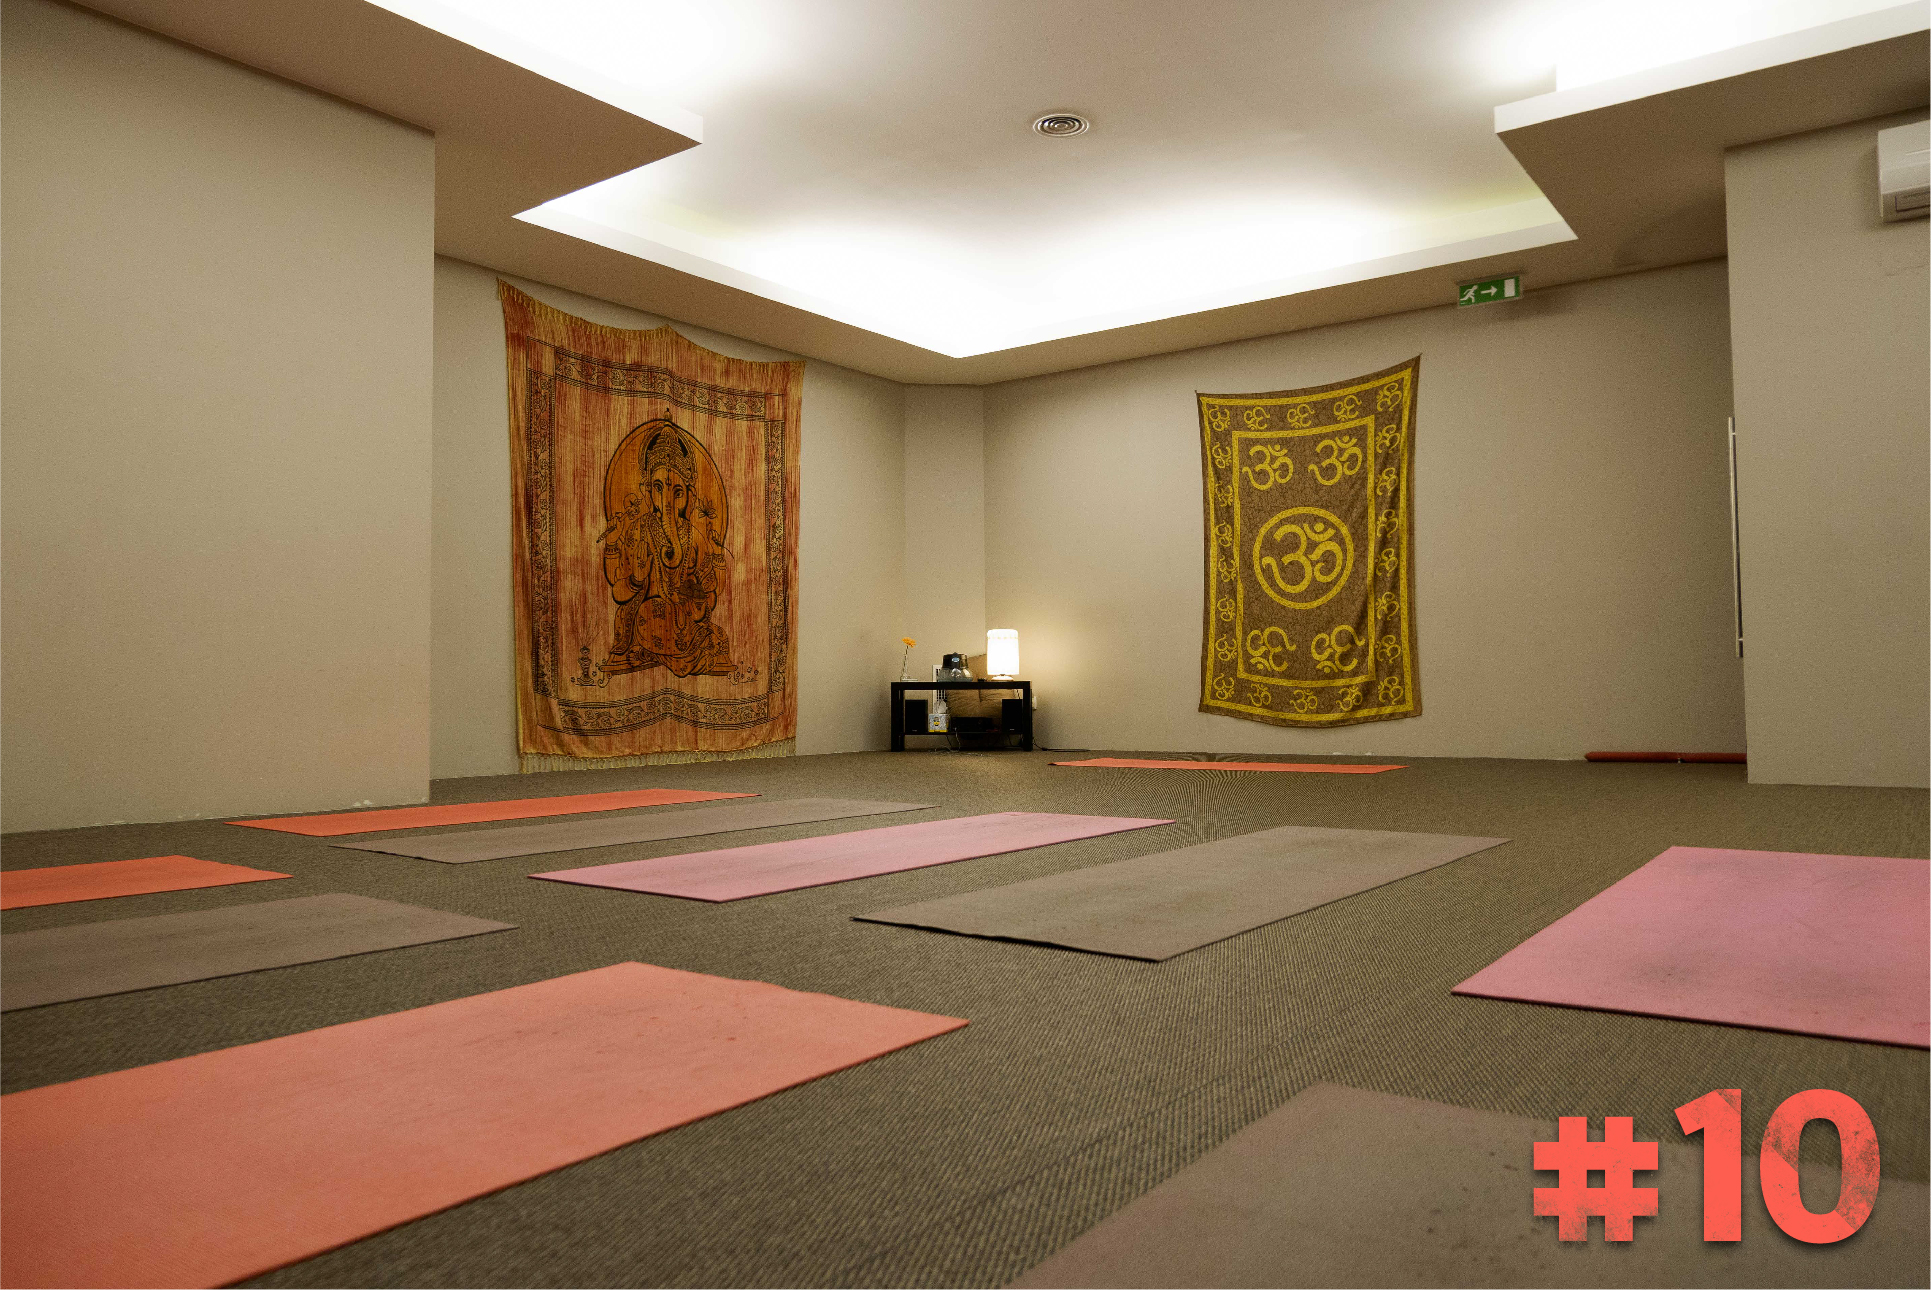 Fomos descobrir o novo estúdio de Lisboa onde o ioga é mesmo para